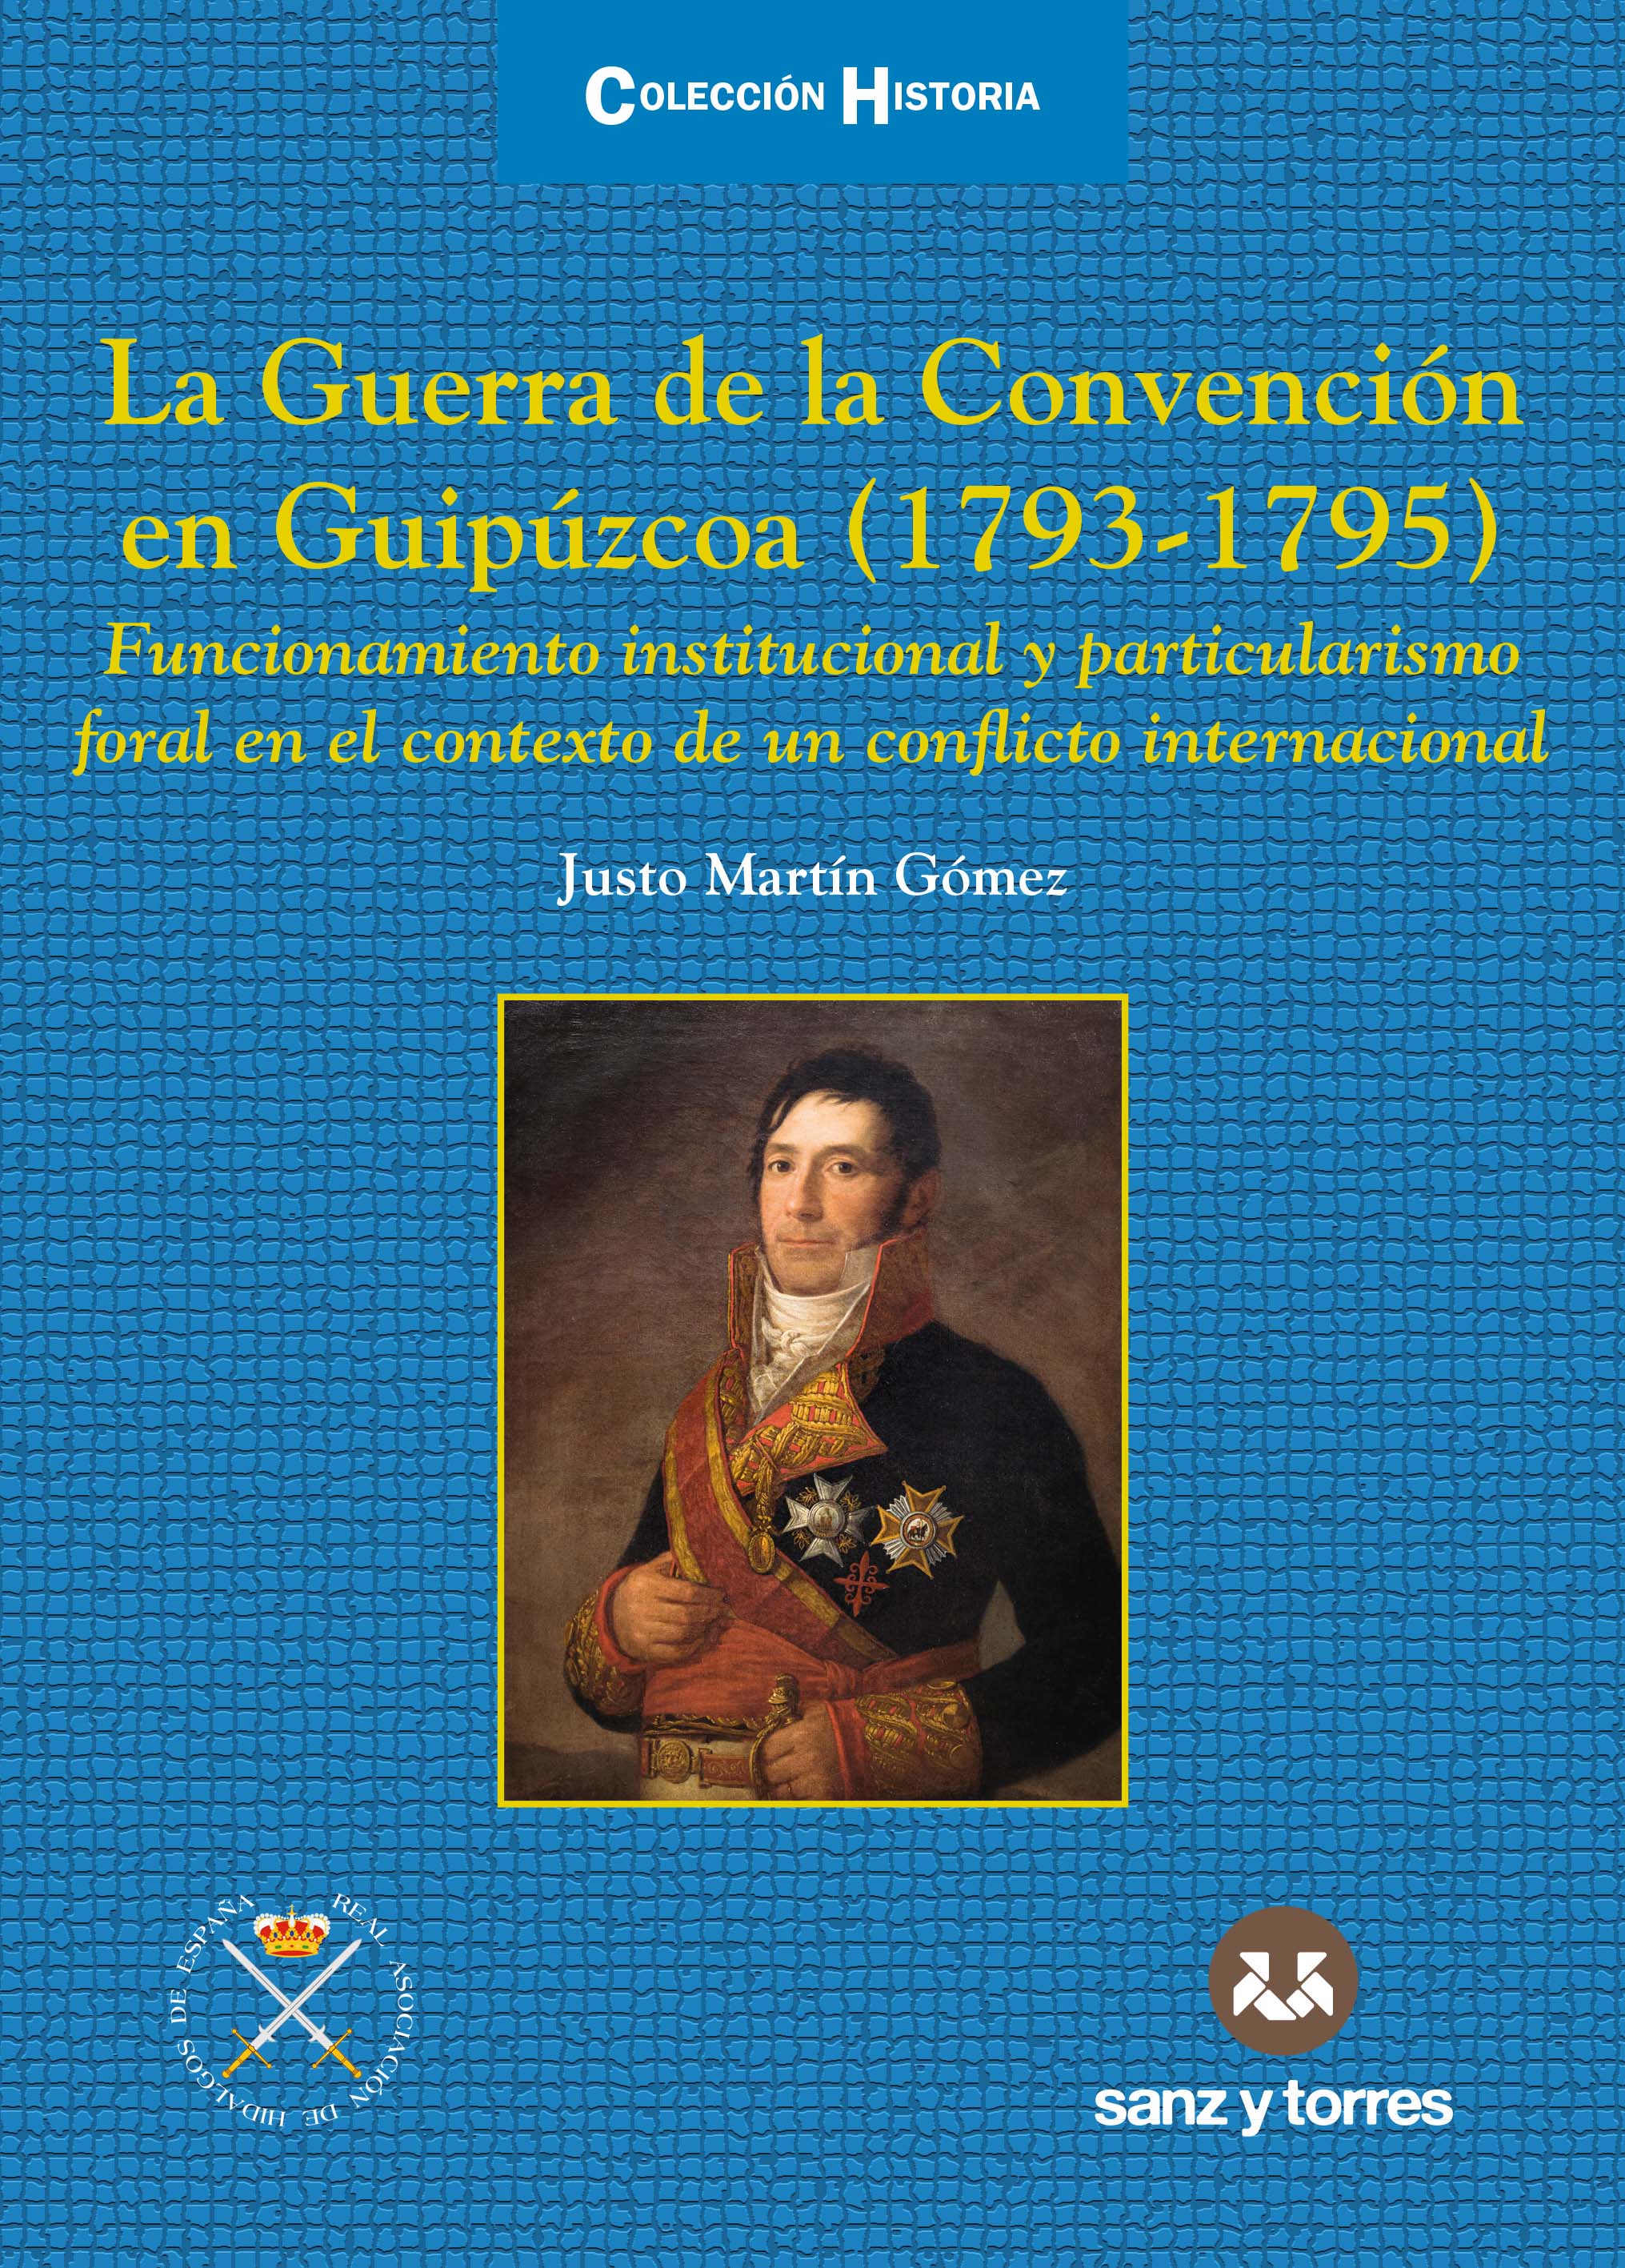 La guerra de la convención en Guipúzcoa (1793-1795)